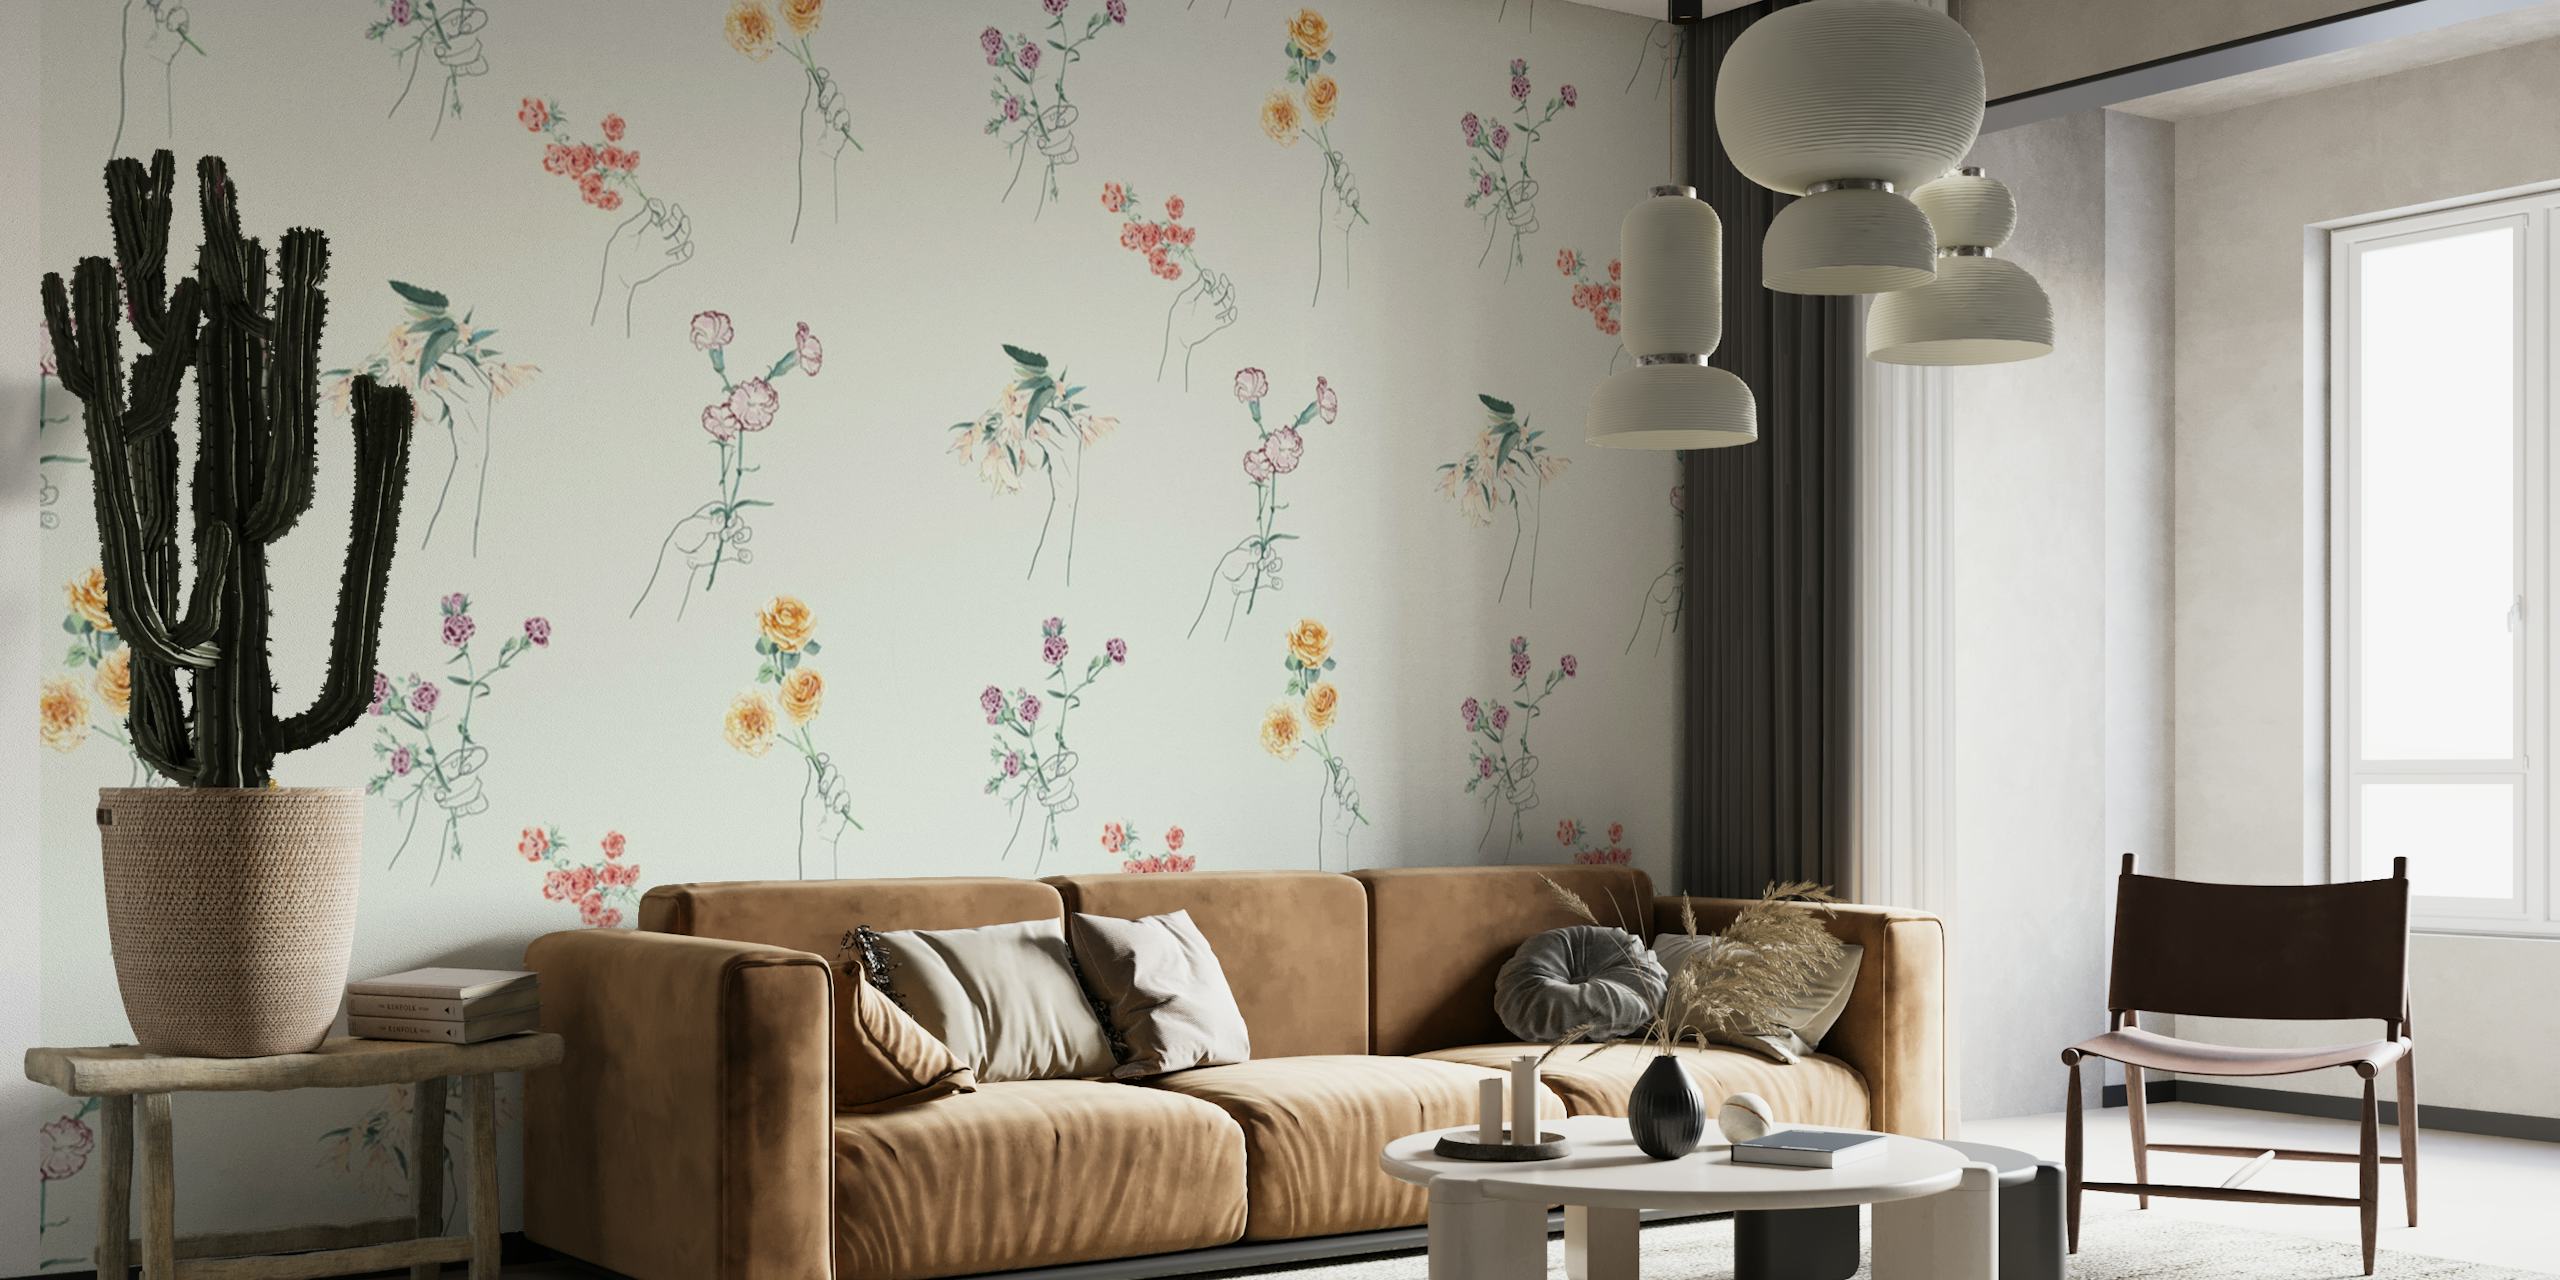 Tyylikäs kasvitieteellinen seinämaalaus käsin poimituista luonnonkukista ja oksista hienovaraisella taustalla